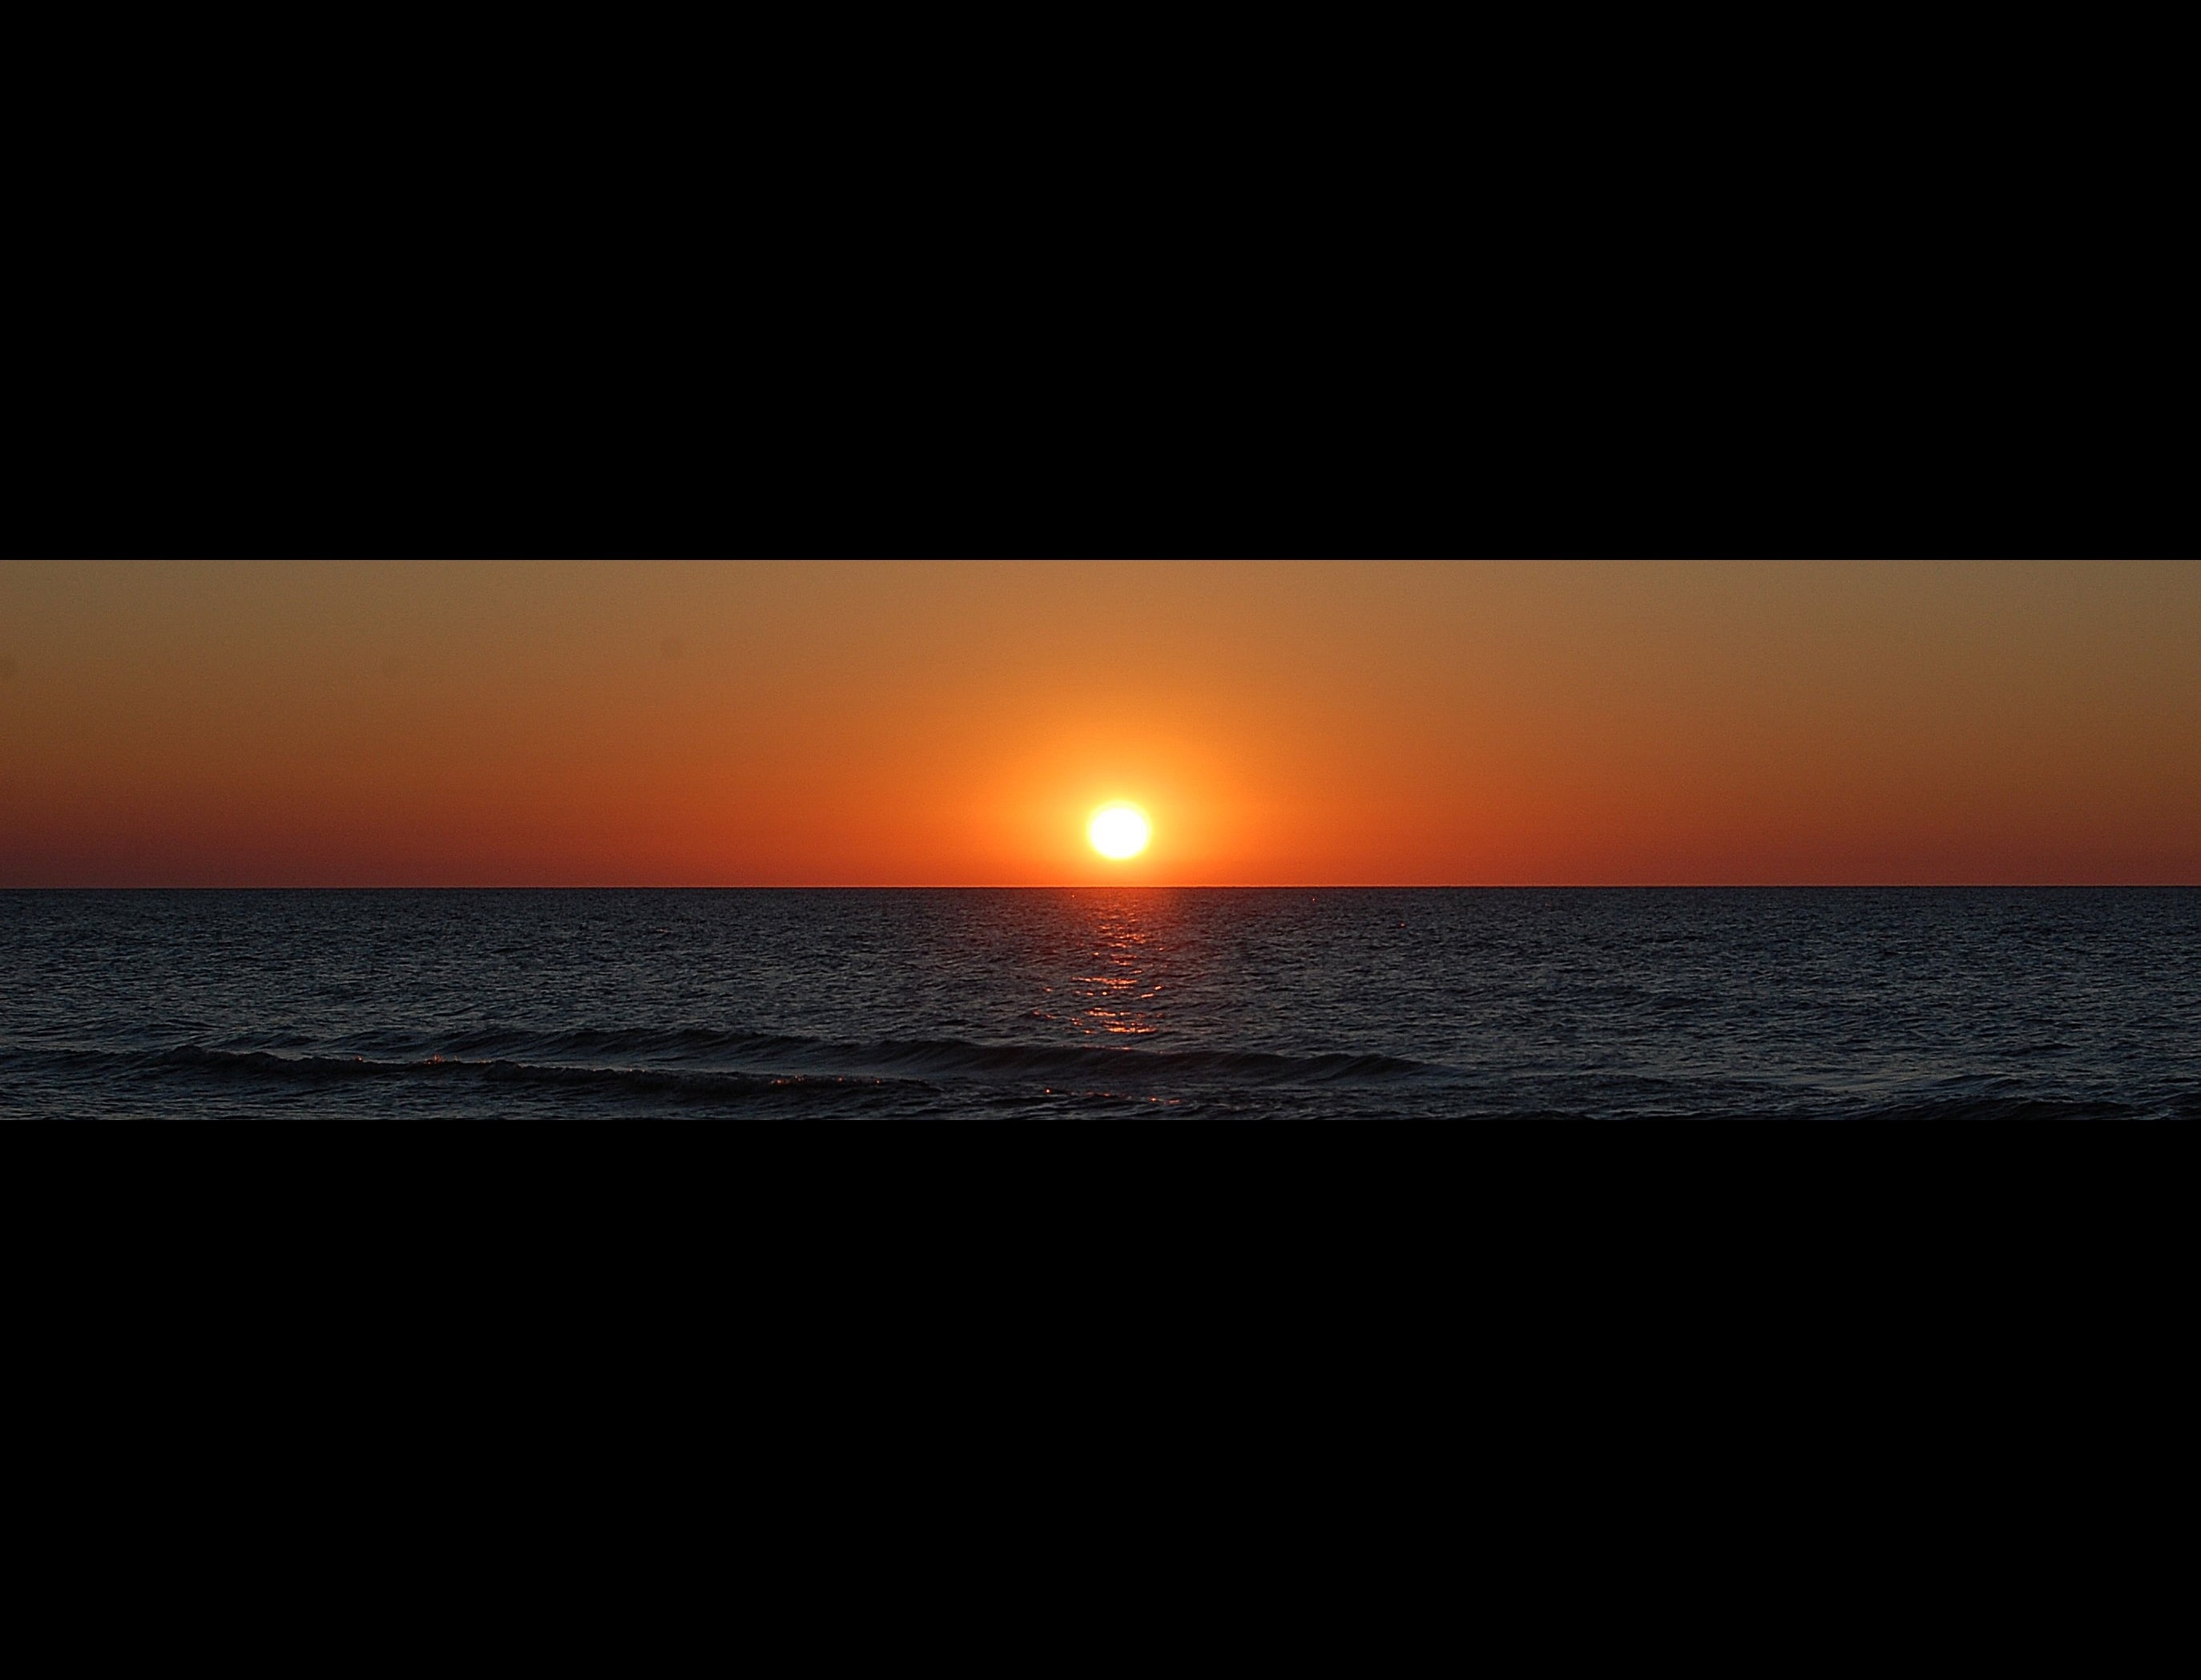 sea and sun set